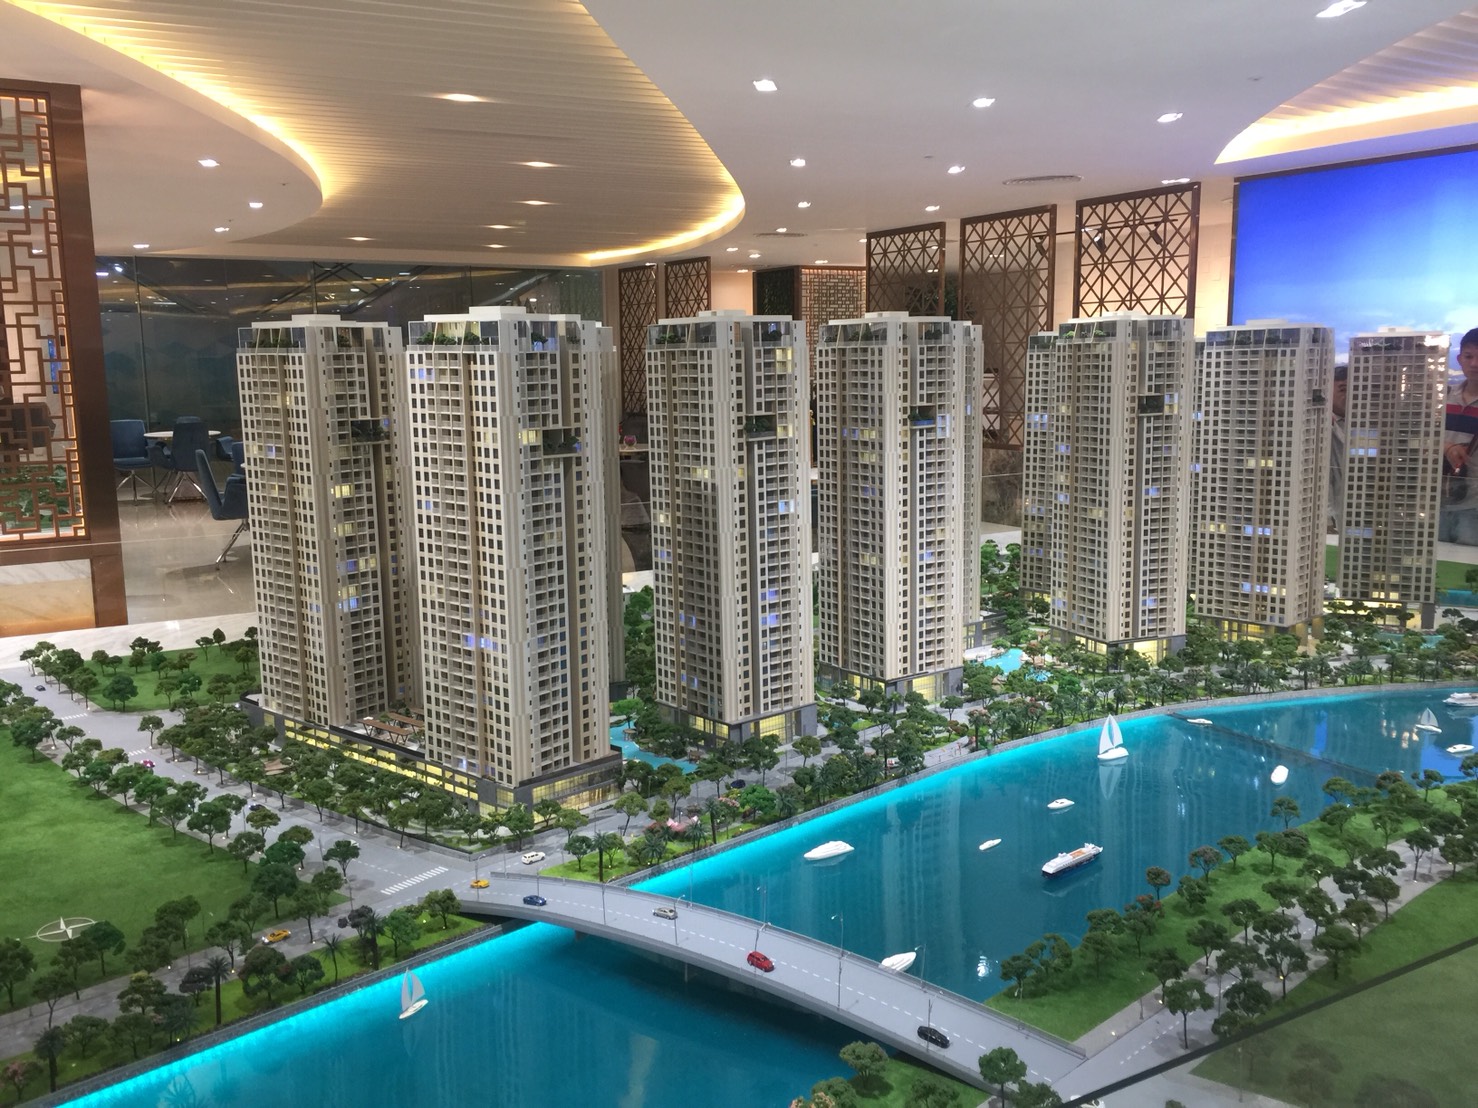 精明投資越南房地產 越南房地產投資購屋流程說明 @東南亞投資報告